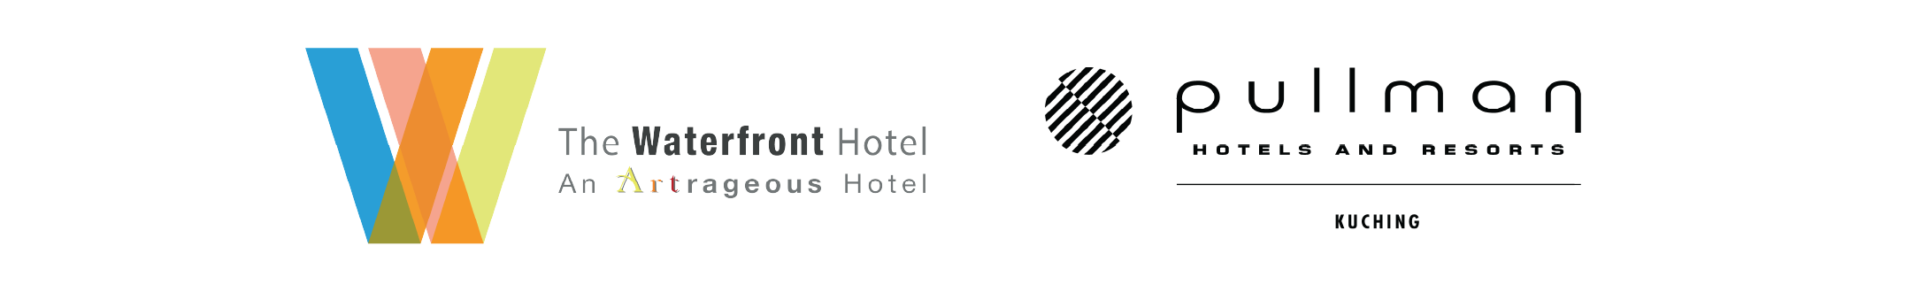 Hotel Partner 3